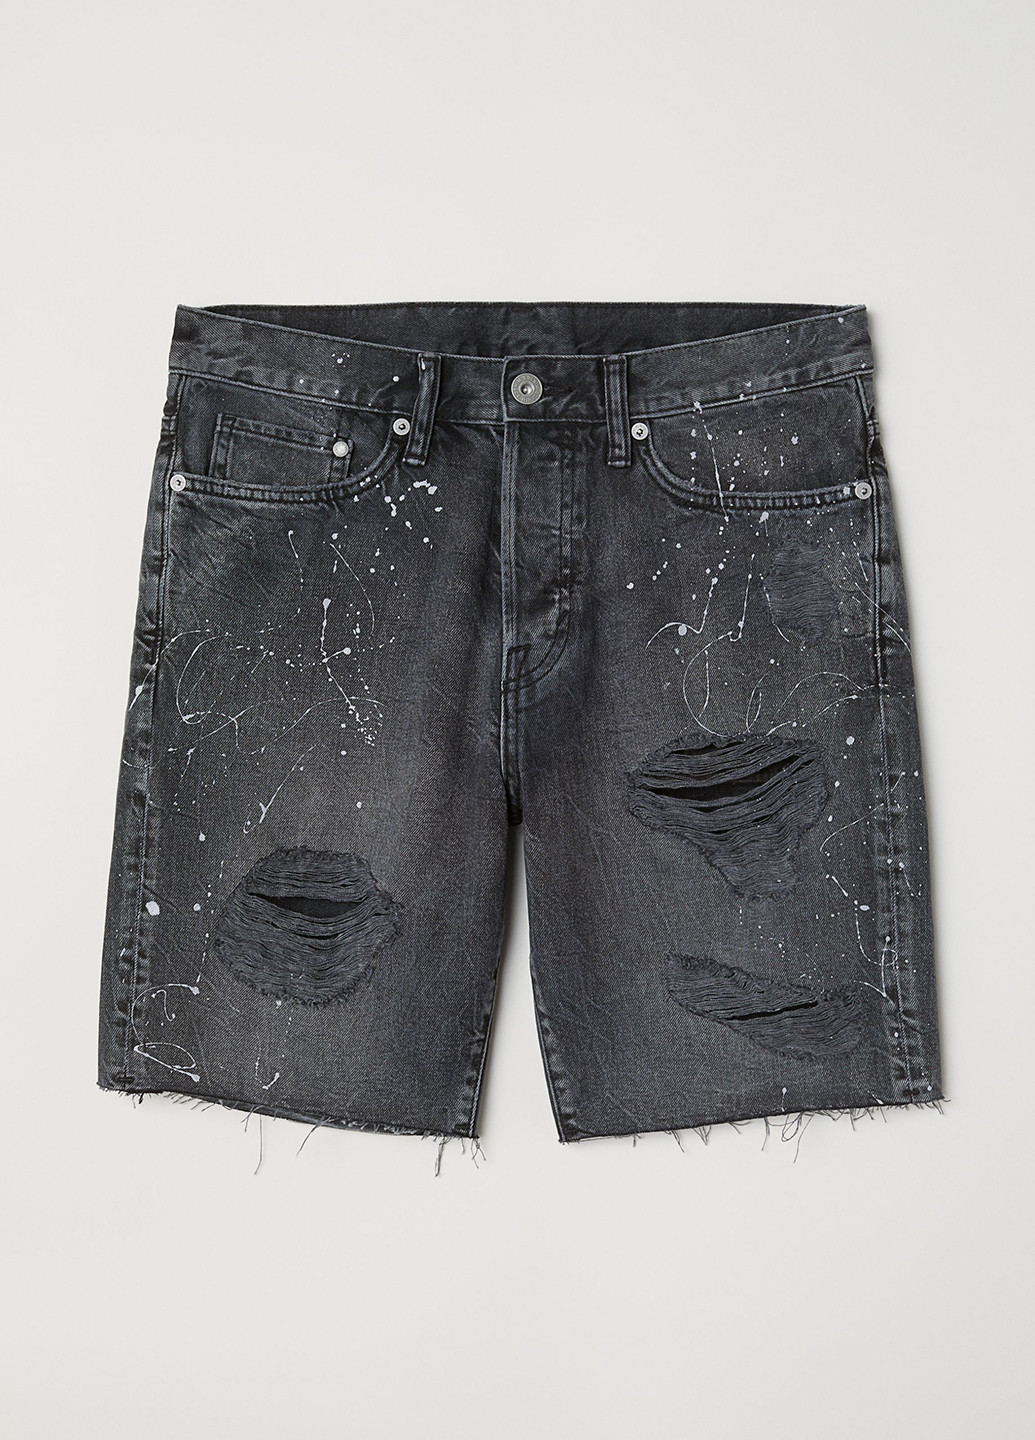 Шорты H&M абстрактные тёмно-серые джинсовые хлопок